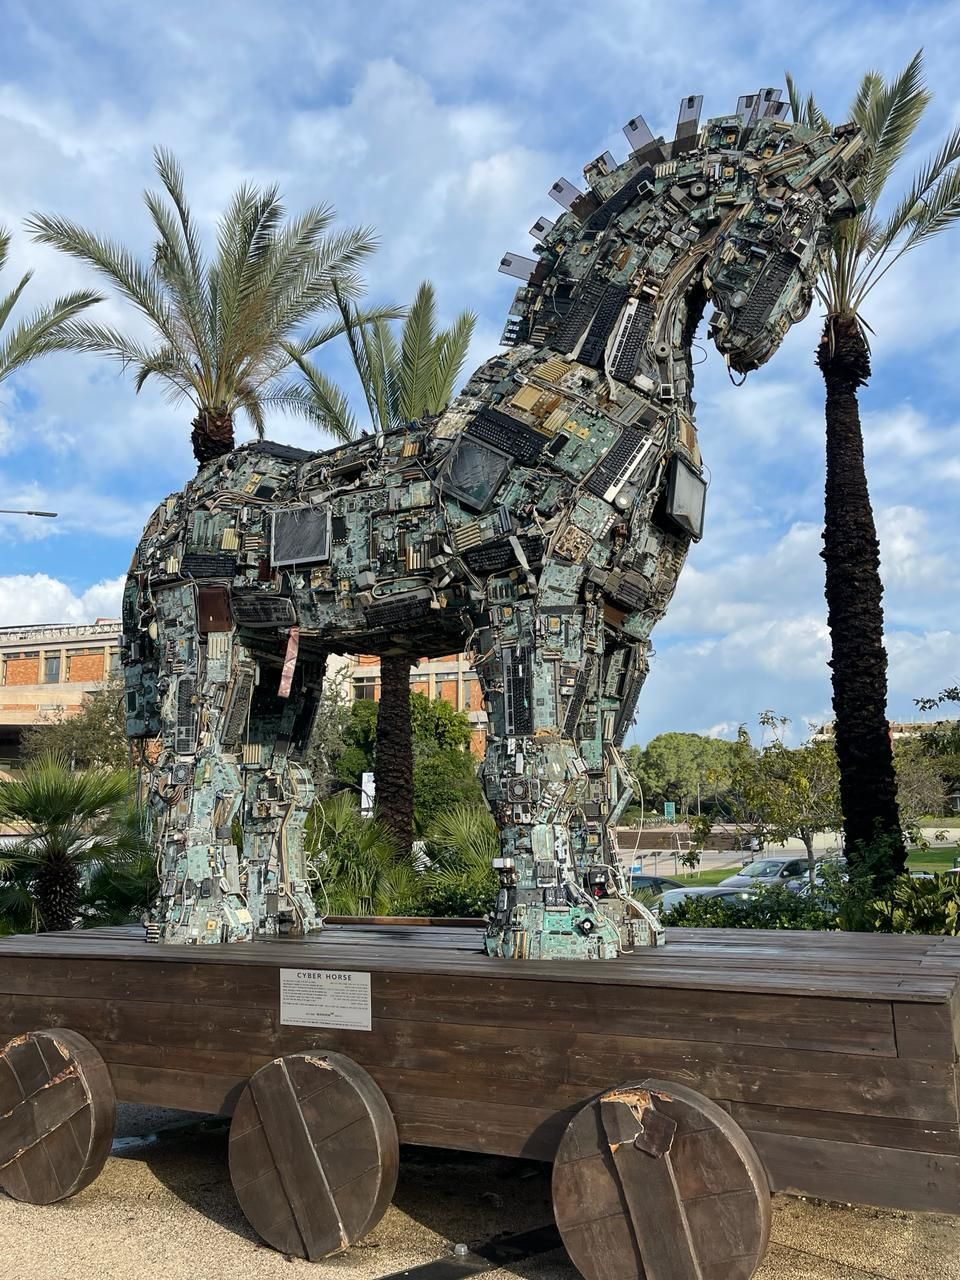 Το υπερμεγέθες άλογο, που είναι "χτισμένο" με υλικά από ξεπερασμένους ηλεκτρονικούς υπολογιστές, υποδέχεται τους φοιτητές έξω από το Πανεπιστήμιο του Τελ Αβίβ. Ο τίτλος του έργου είναι "Ψηφιακός Ίππος" (Cyber Horse), ωστόσο σε μία αληγορική ερμηνεία θα μπορούσε να είναι και ένας Δούρειος Ίππος, καθώς η Τεχνητή Νοημοσύνη εισβάλει στη ζωή μας με πολλούς τρόπους, χωρίς απαραίτητα να το γνωρίζουμε. Στην περίπτωση του Ισραήλ, αποτελεί και "εργαλείο" ενός πολέμου που διεξάγεται με πολλούς τρόπους. Στο πεδίο της μάχης με στόχους που εντοπίζονται με χρήση ΑΙ (Artificial Intellignece), αλλά και στο Διαδίκτυο όπου η Τεχνητή Νοημοσύνη χρησιμοποιείται για την κατασκευή fake news, αλλά και για τον εντοπισμό τους. (Τελ Αβίβ, 5 Φεβρουαρίου 2024). 